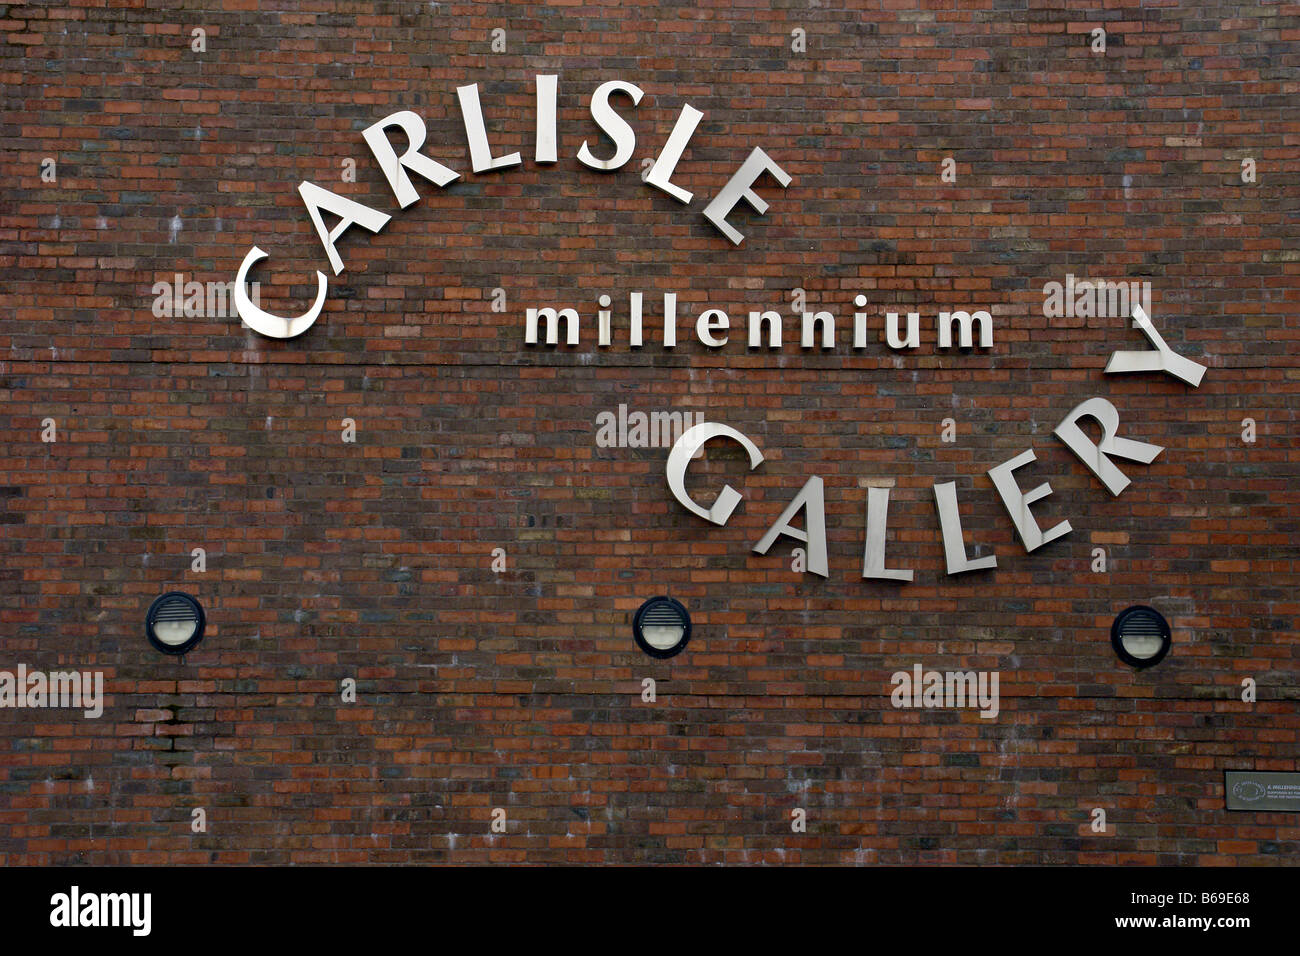 Carlisle Millennium Gallery Cumbria Stock Photo